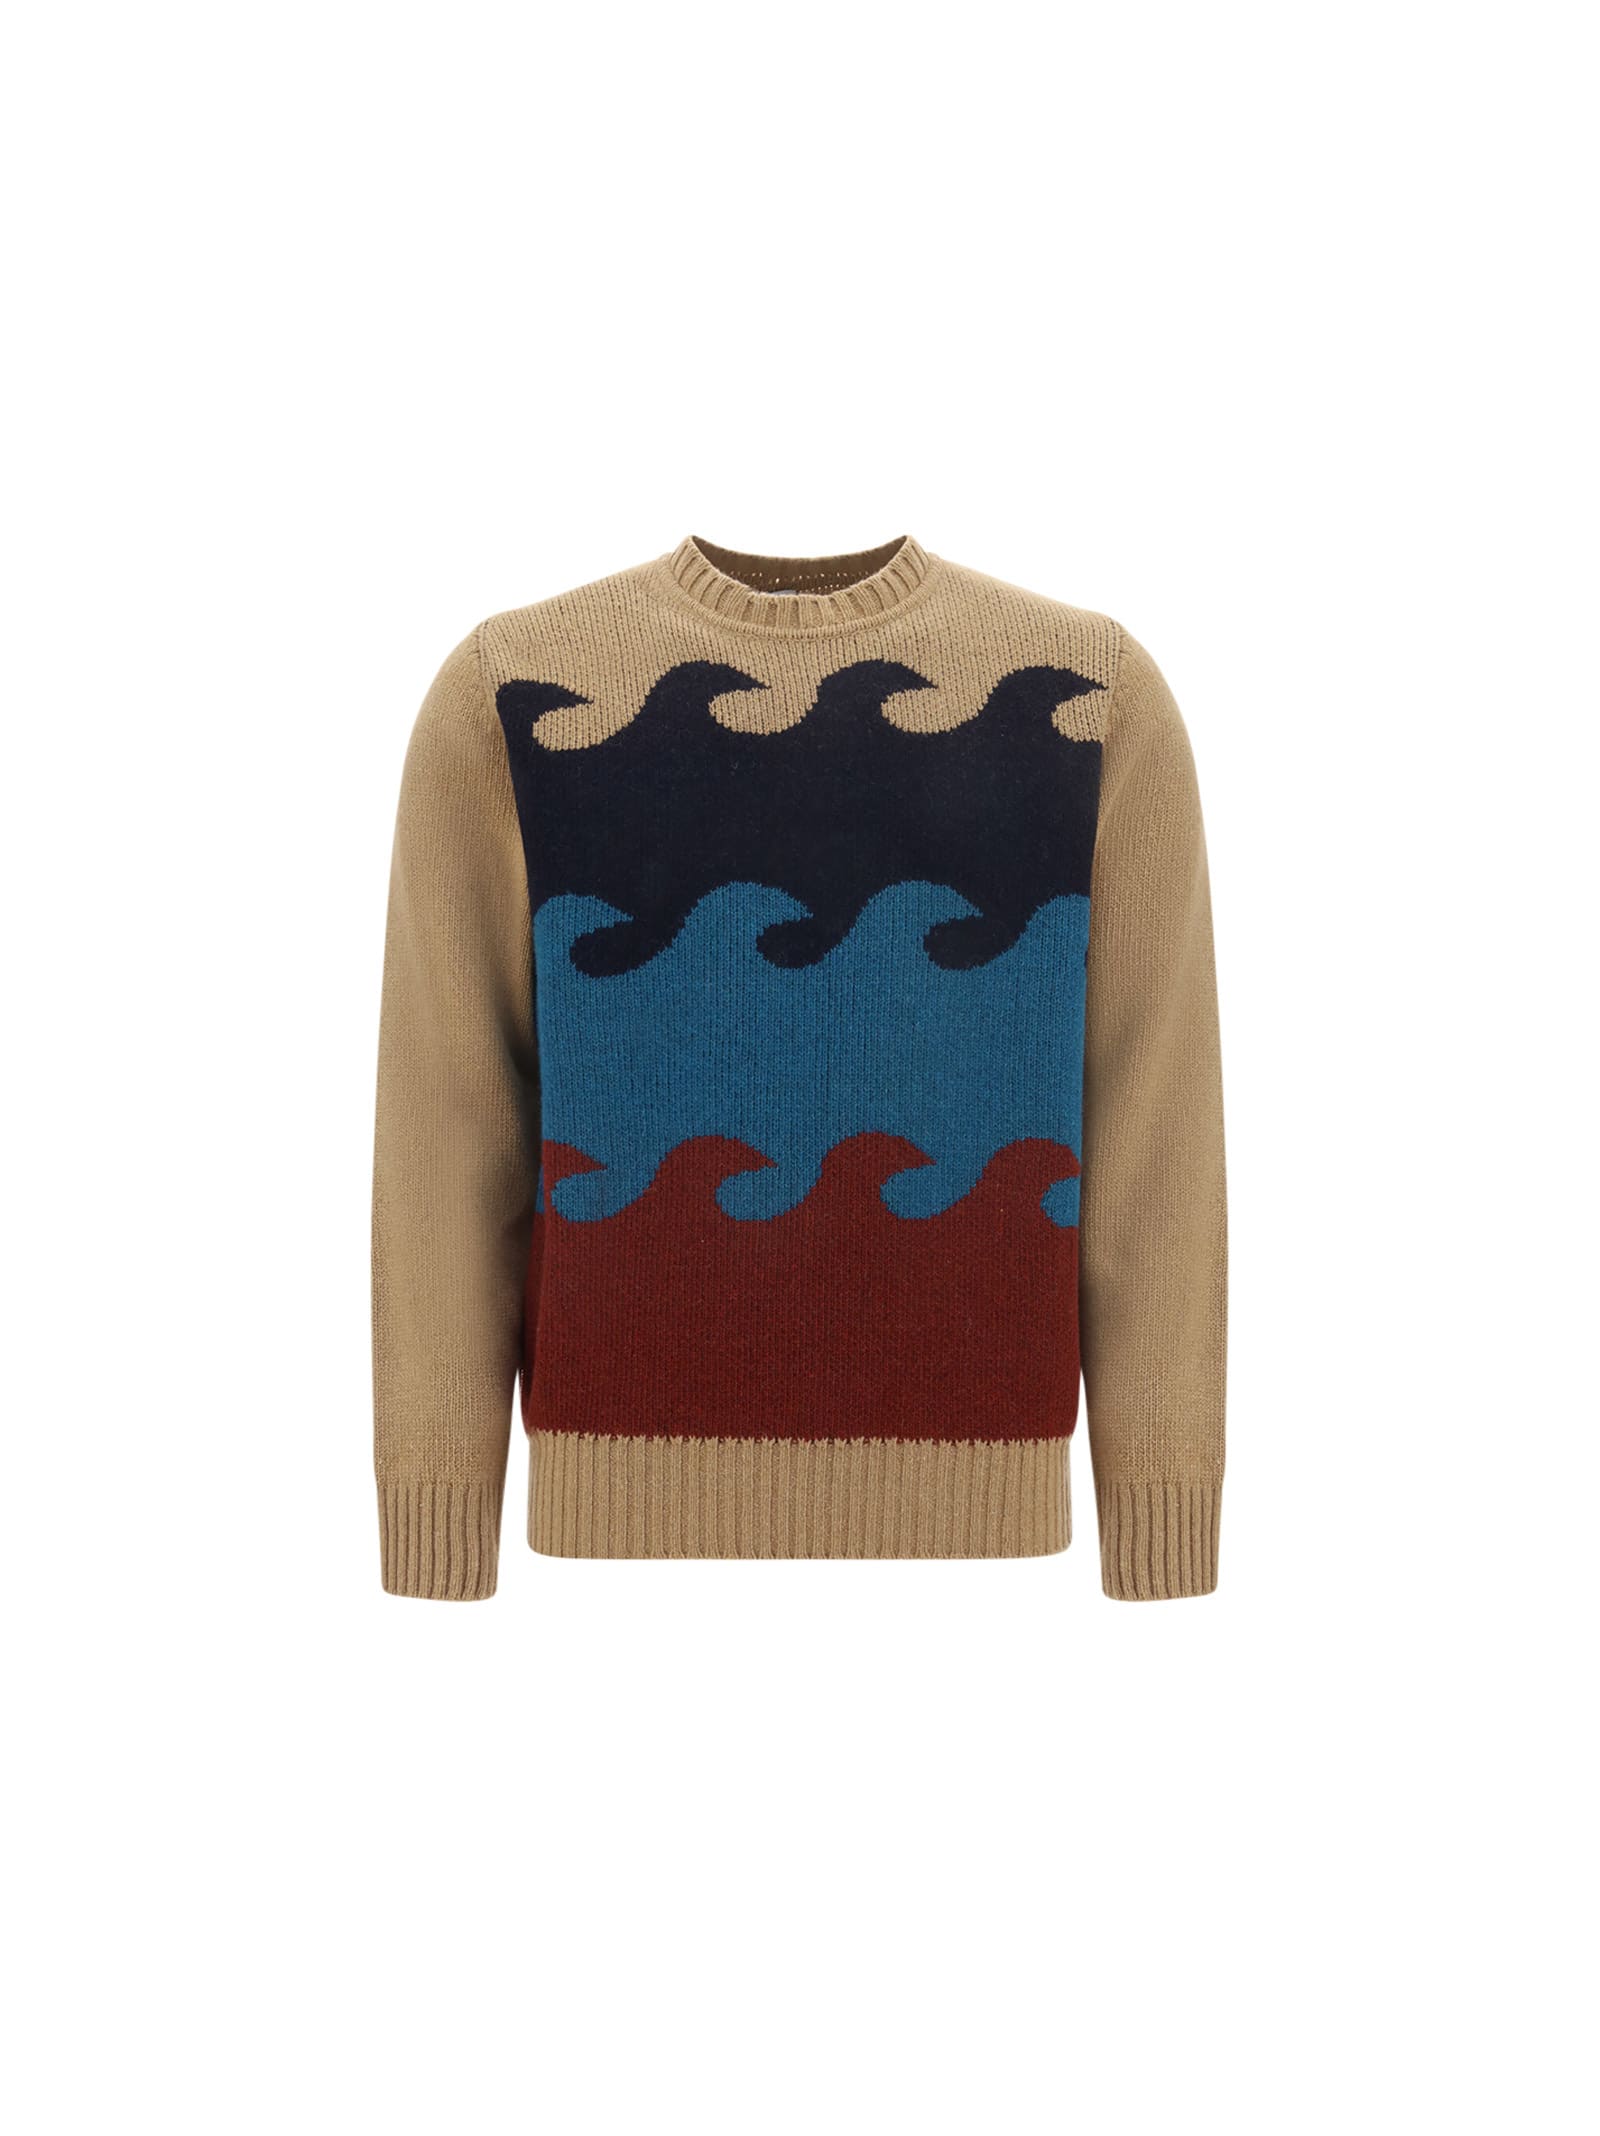 Sundek Sweater